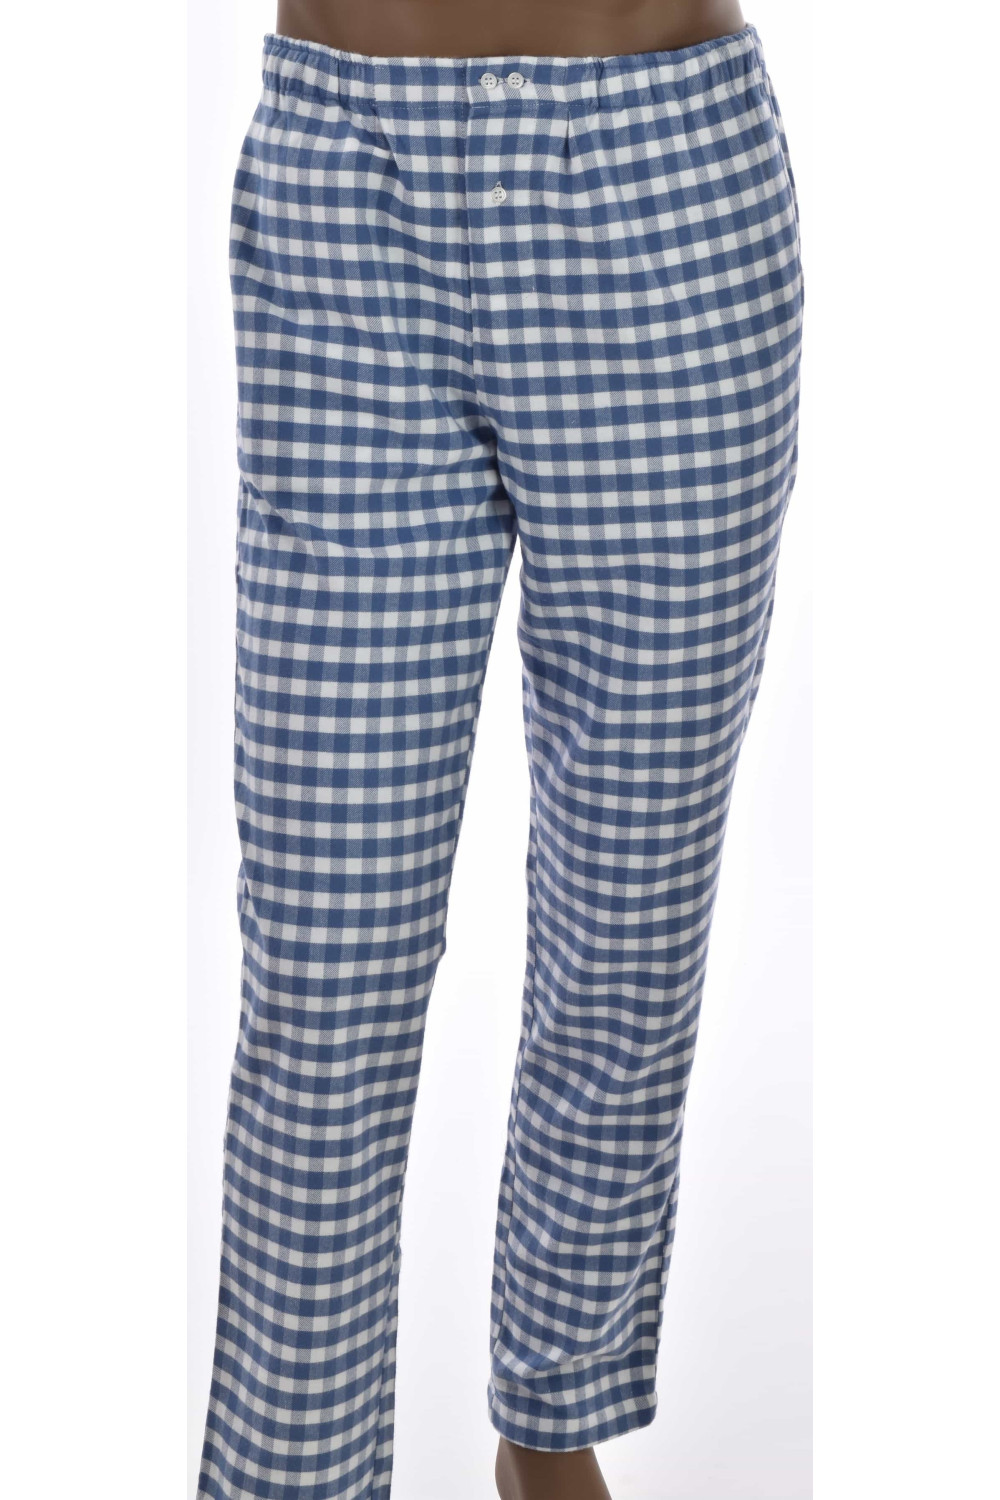 Pantalons Intérieur homme, Pantalons de Pyjamas